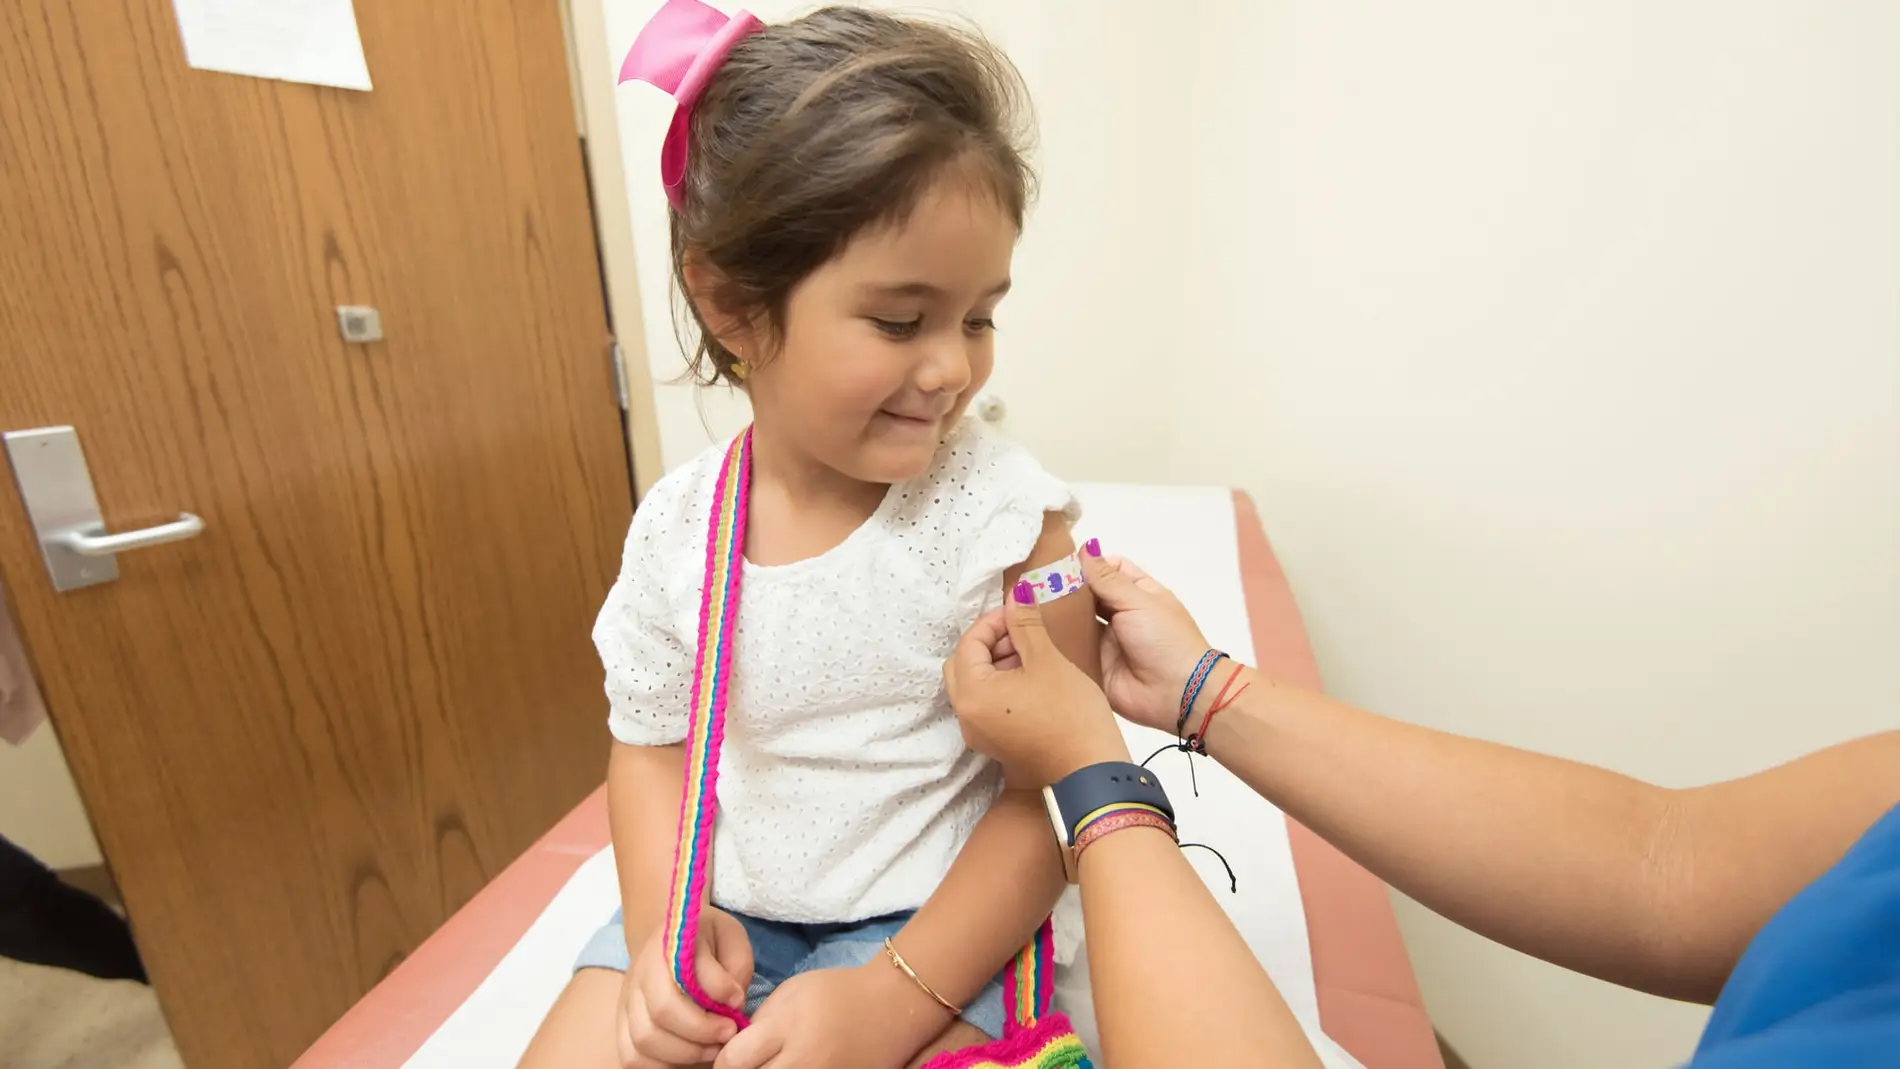 Enfermera pone una vacuna a una niña pequeña